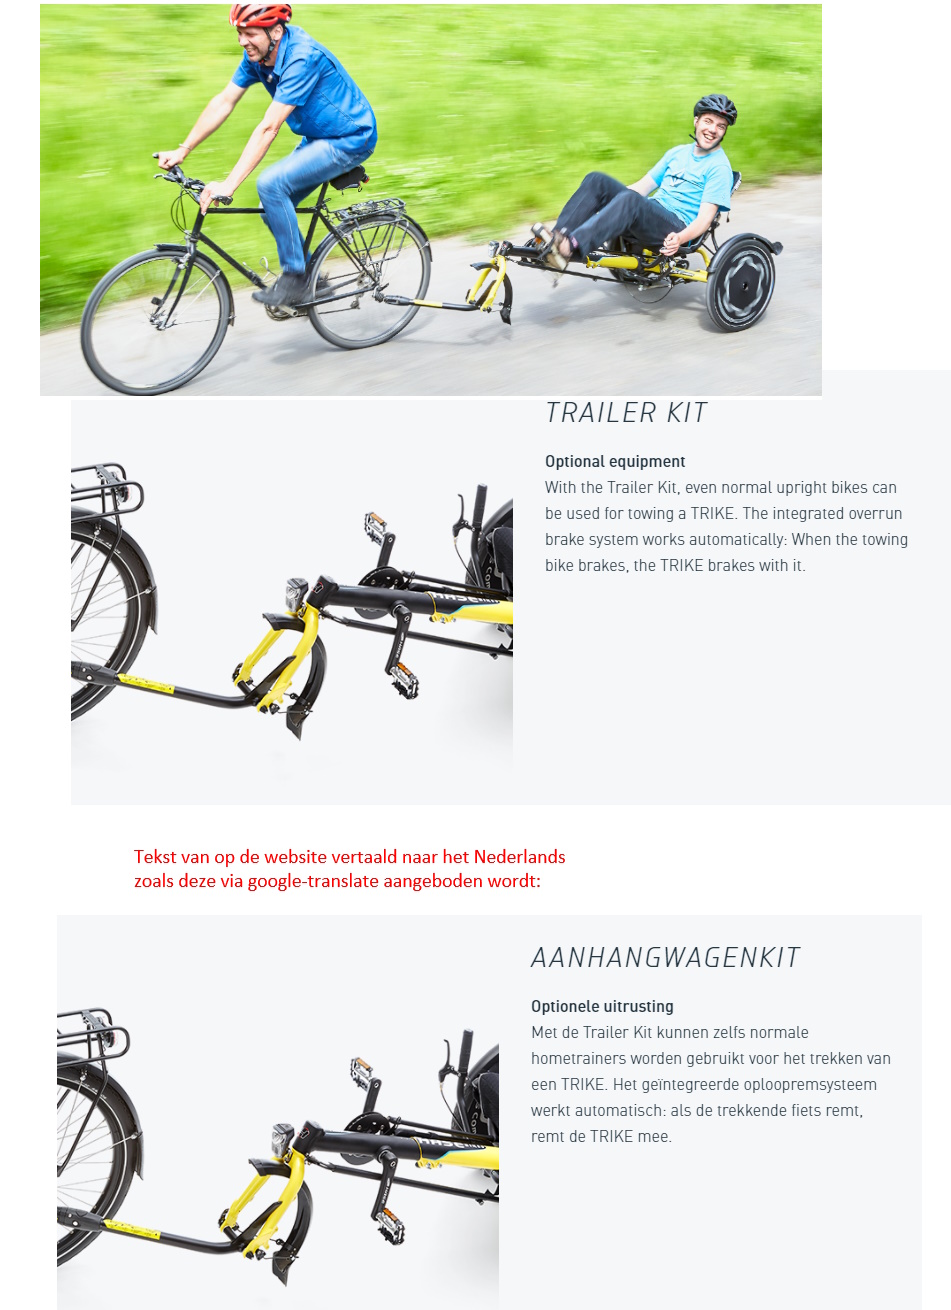 toegevoegd document 2 van Trets Trailerfunctie achter fiets  